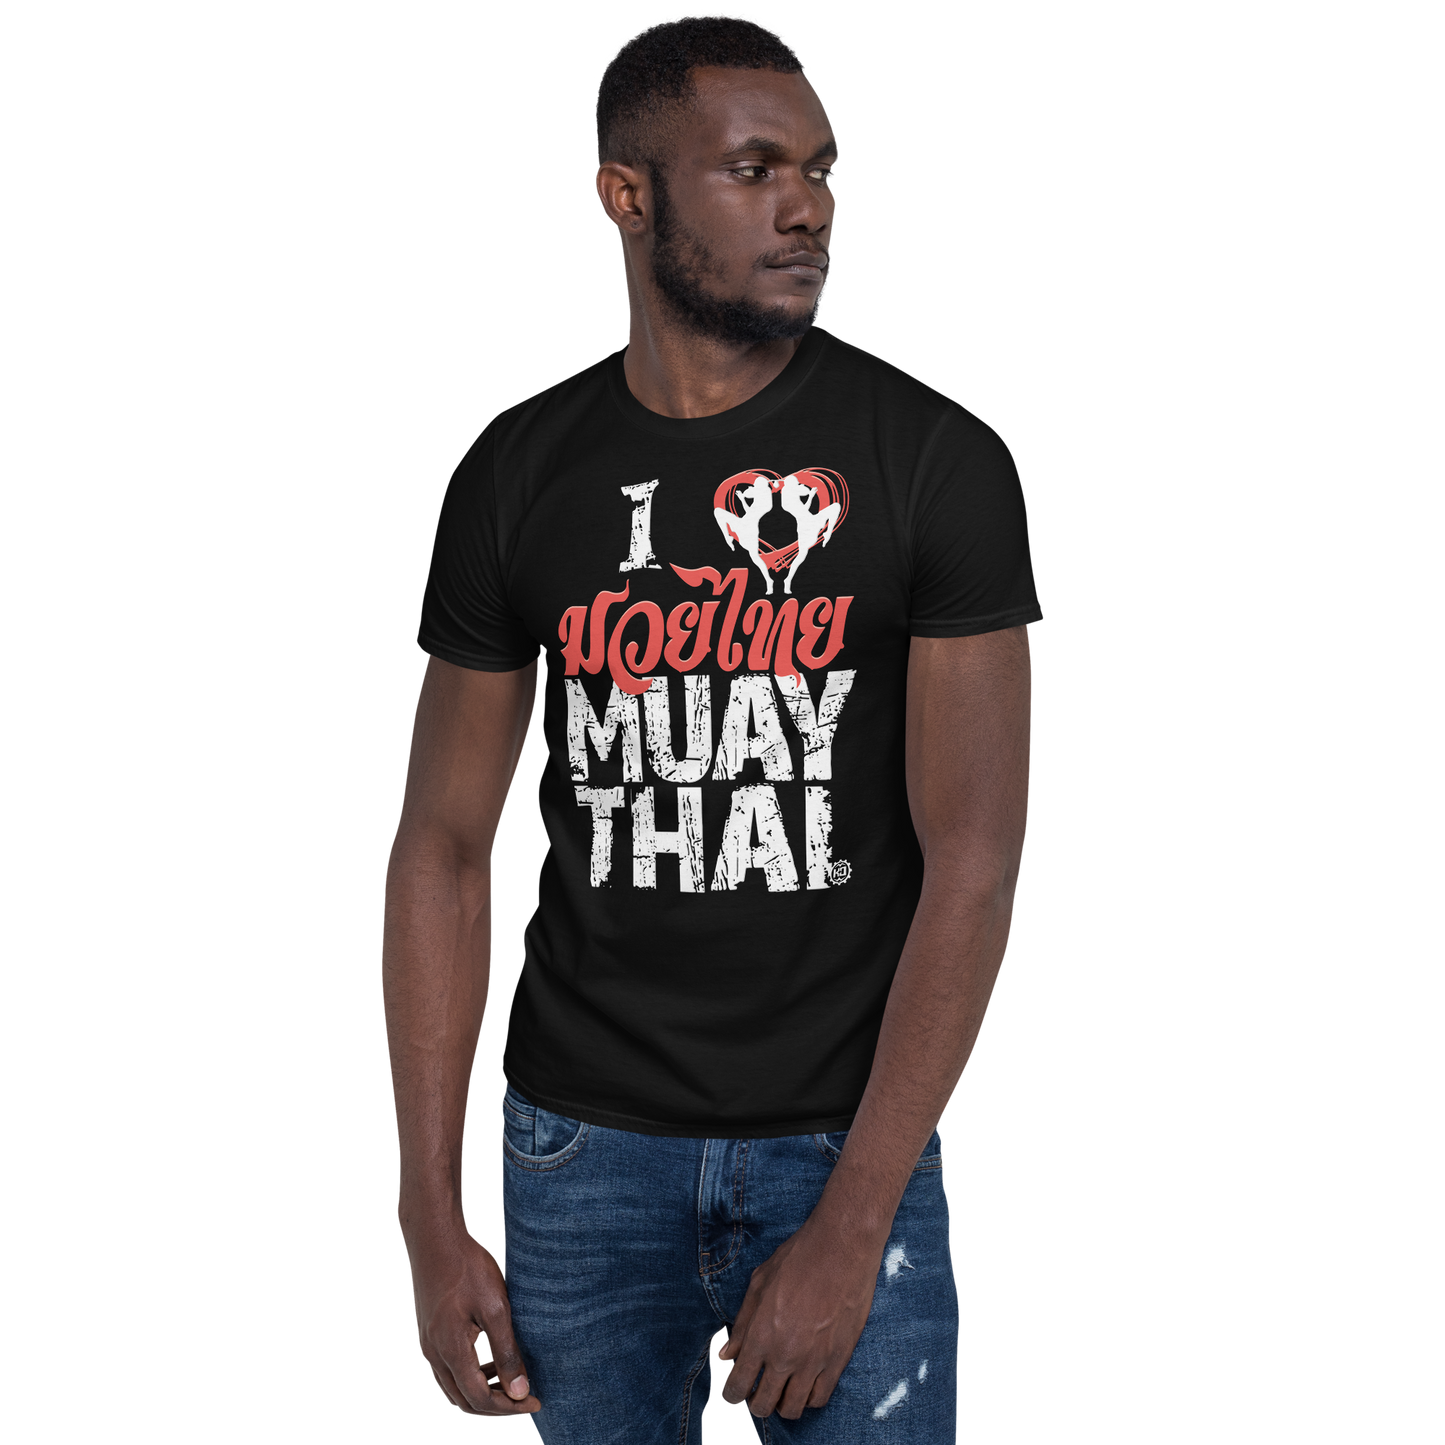 Men's Cotton T-Shirt Ko Machine I Love Muay Thai model black front